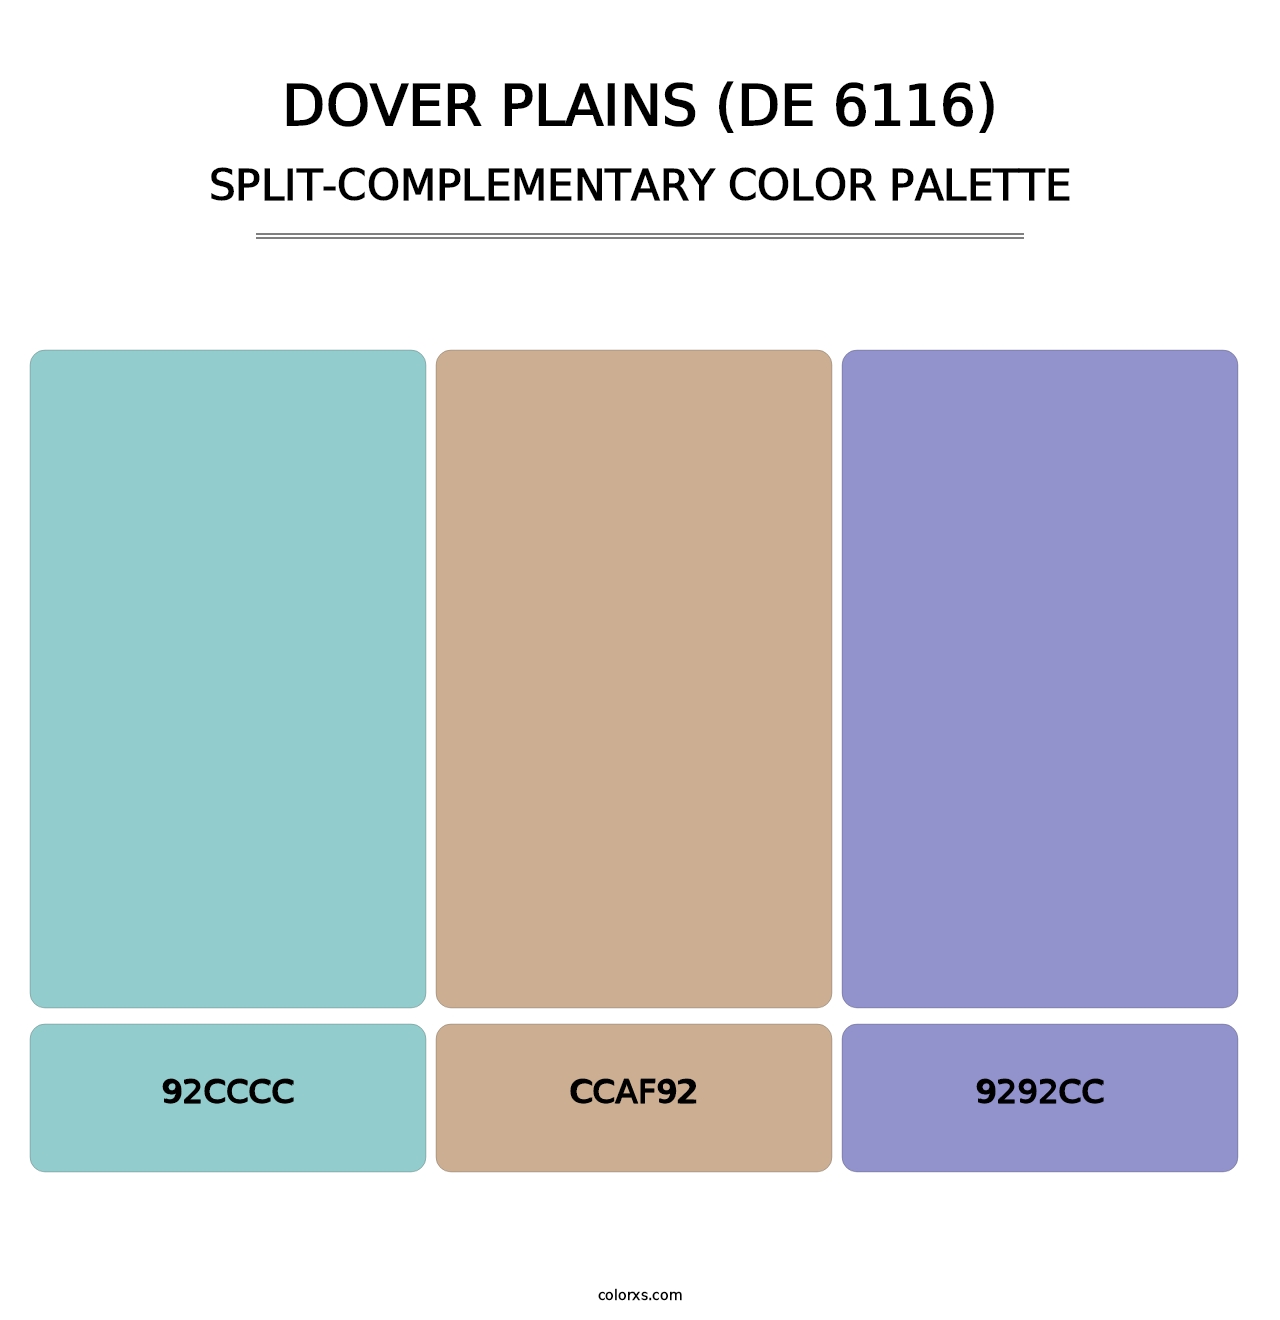 Dover Plains (DE 6116) - Split-Complementary Color Palette